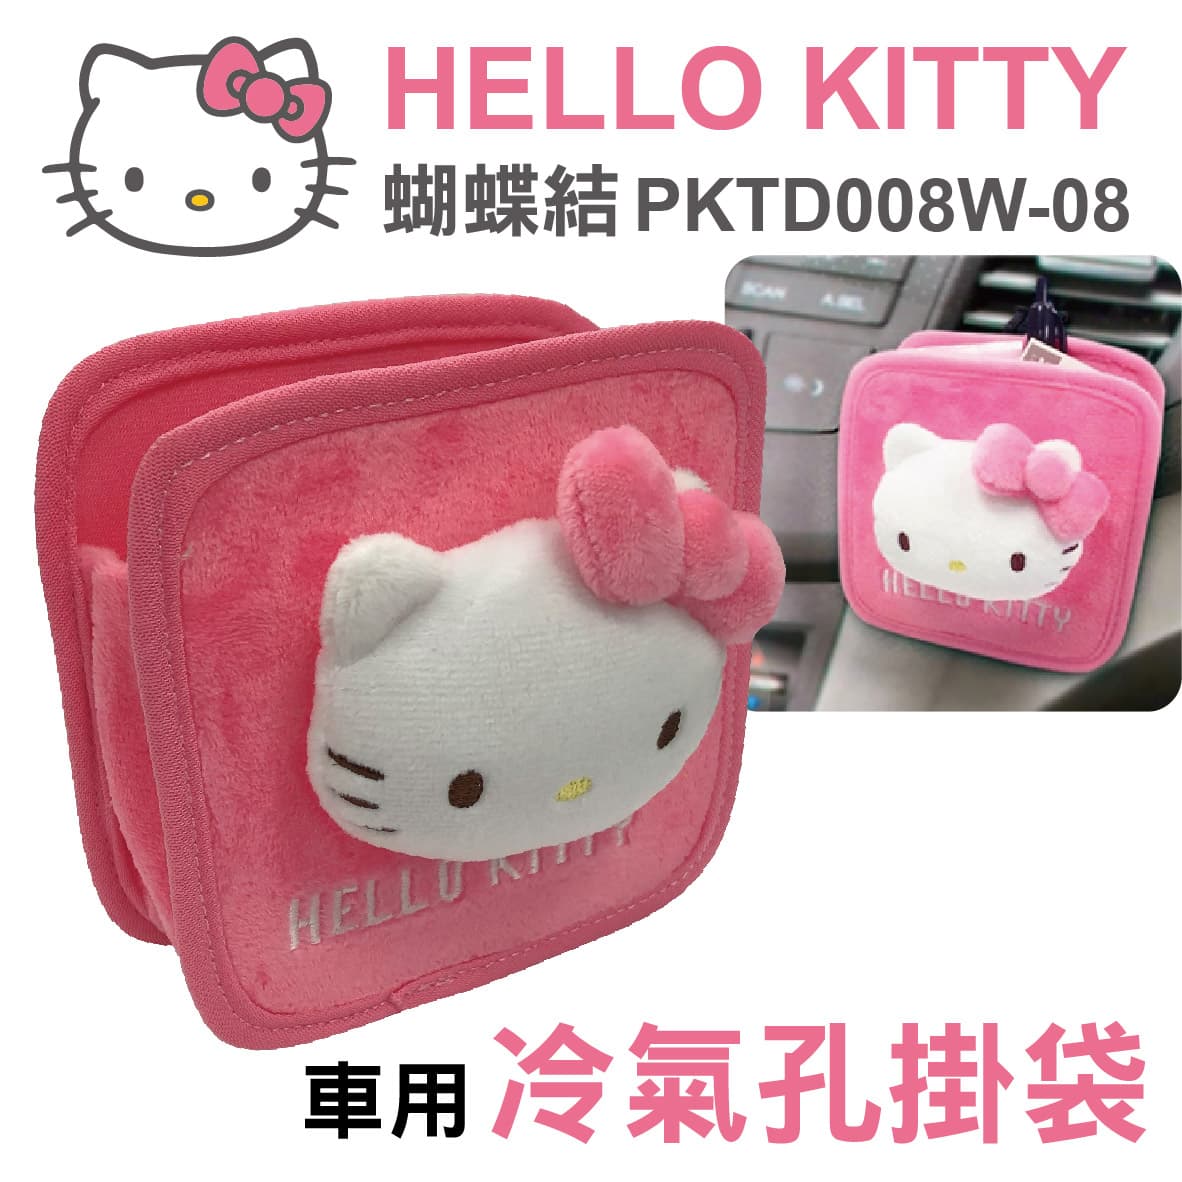 真便宜 HELLO KITTY PKTD008W-08 蝴蝶結-冷氣孔掛袋